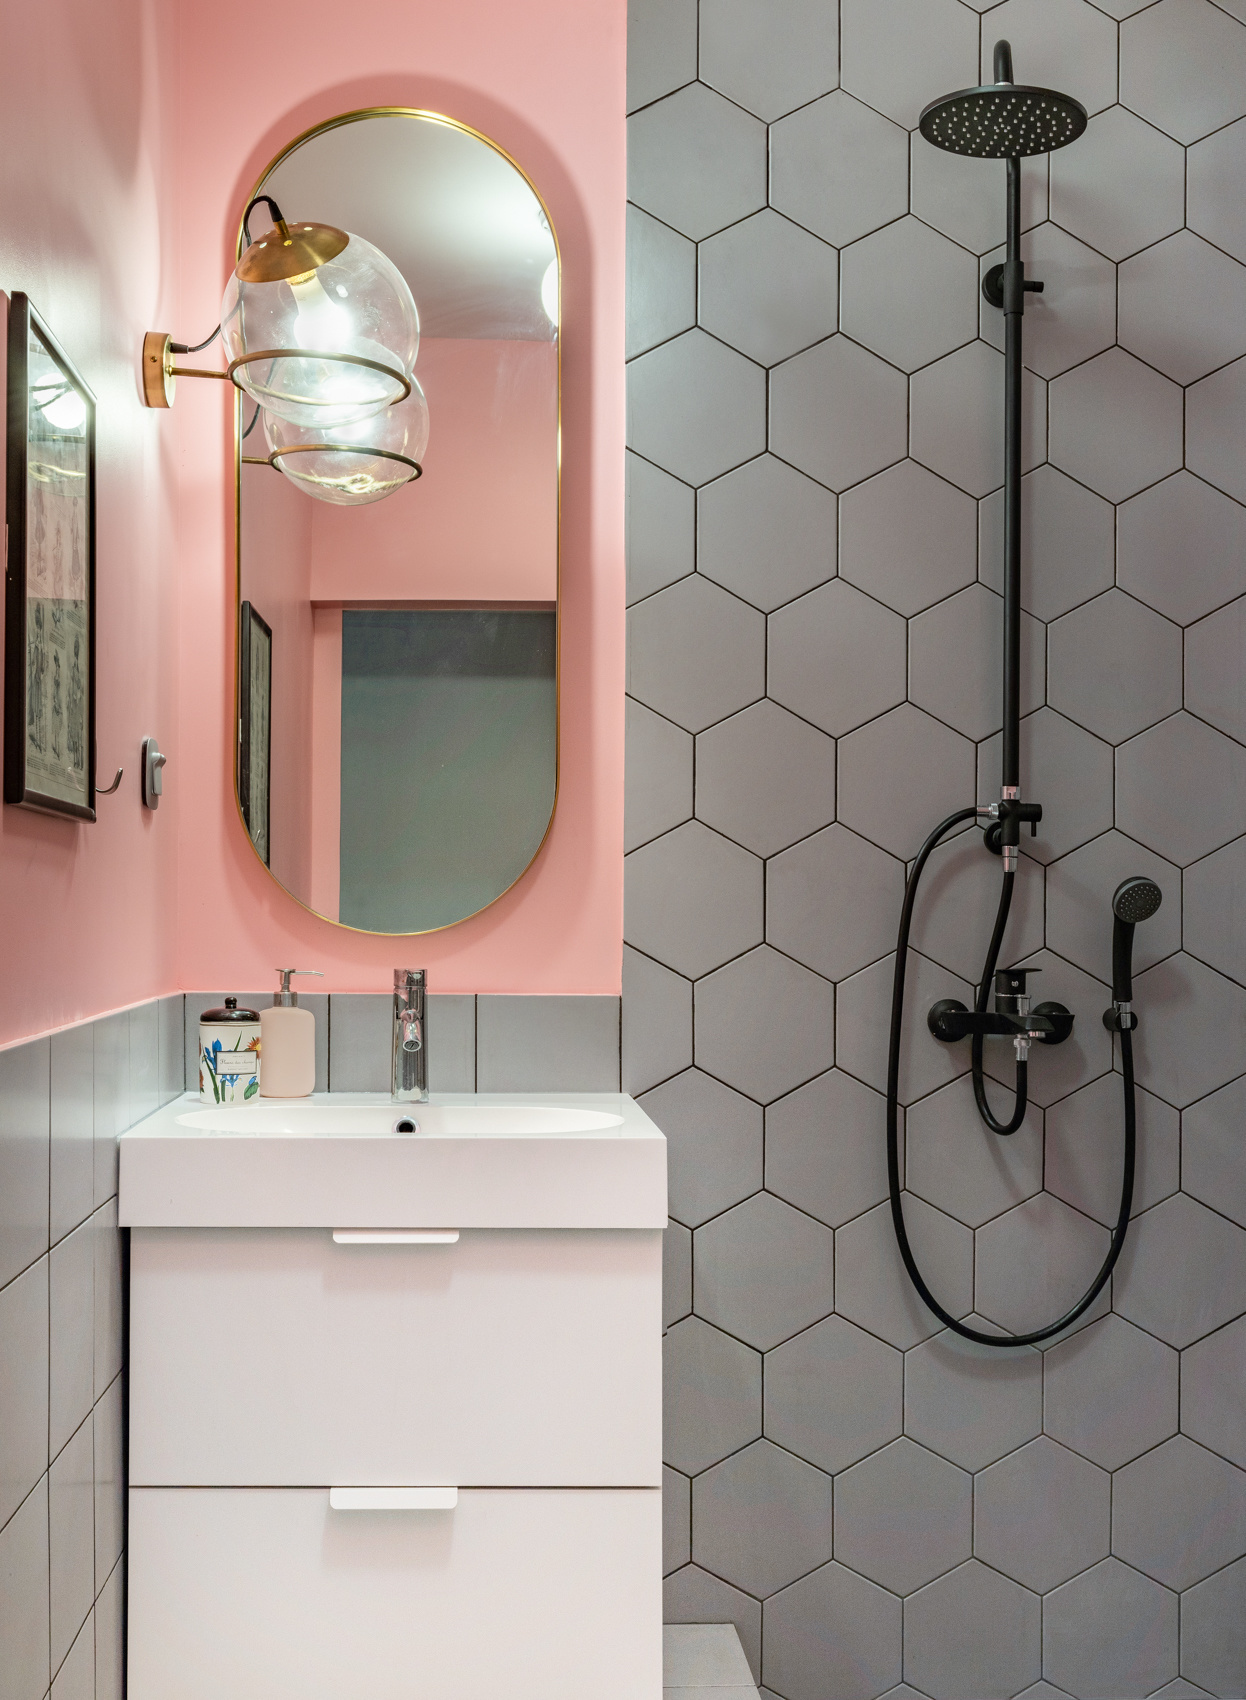 Phòng tắm siêu nhỏ nhưng vẫn nổi bật nhờ gạch ốp tường họa tiết tổ ong kết hợp với một mảng tường sơn màu hồng phấn, tấm gương oval phản chiếu ánh sáng từ đèn gắn tường quả cầu lấp lánh.